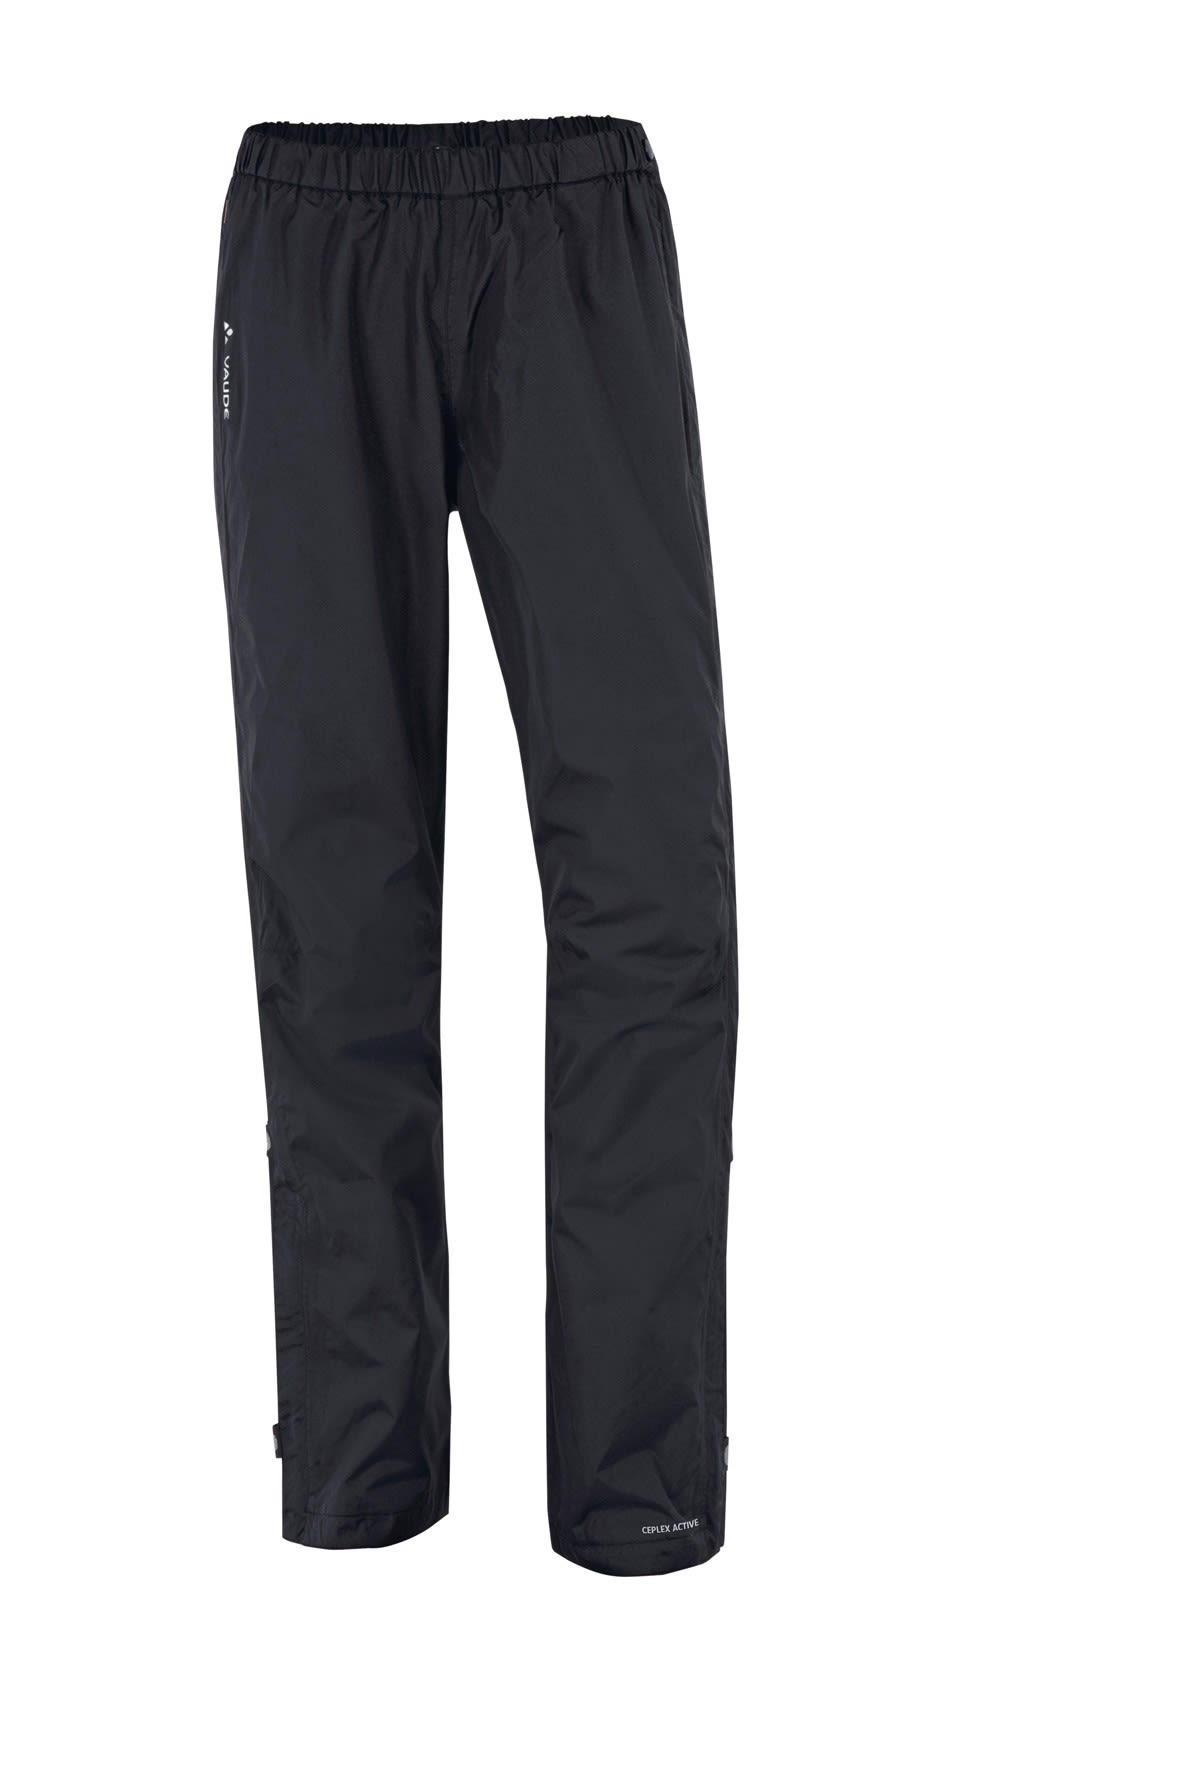 Vaude Fluid Full-Zip Pants Schwarz- Female Hosen- Grsse 42 - Farbe Black unter Vaude